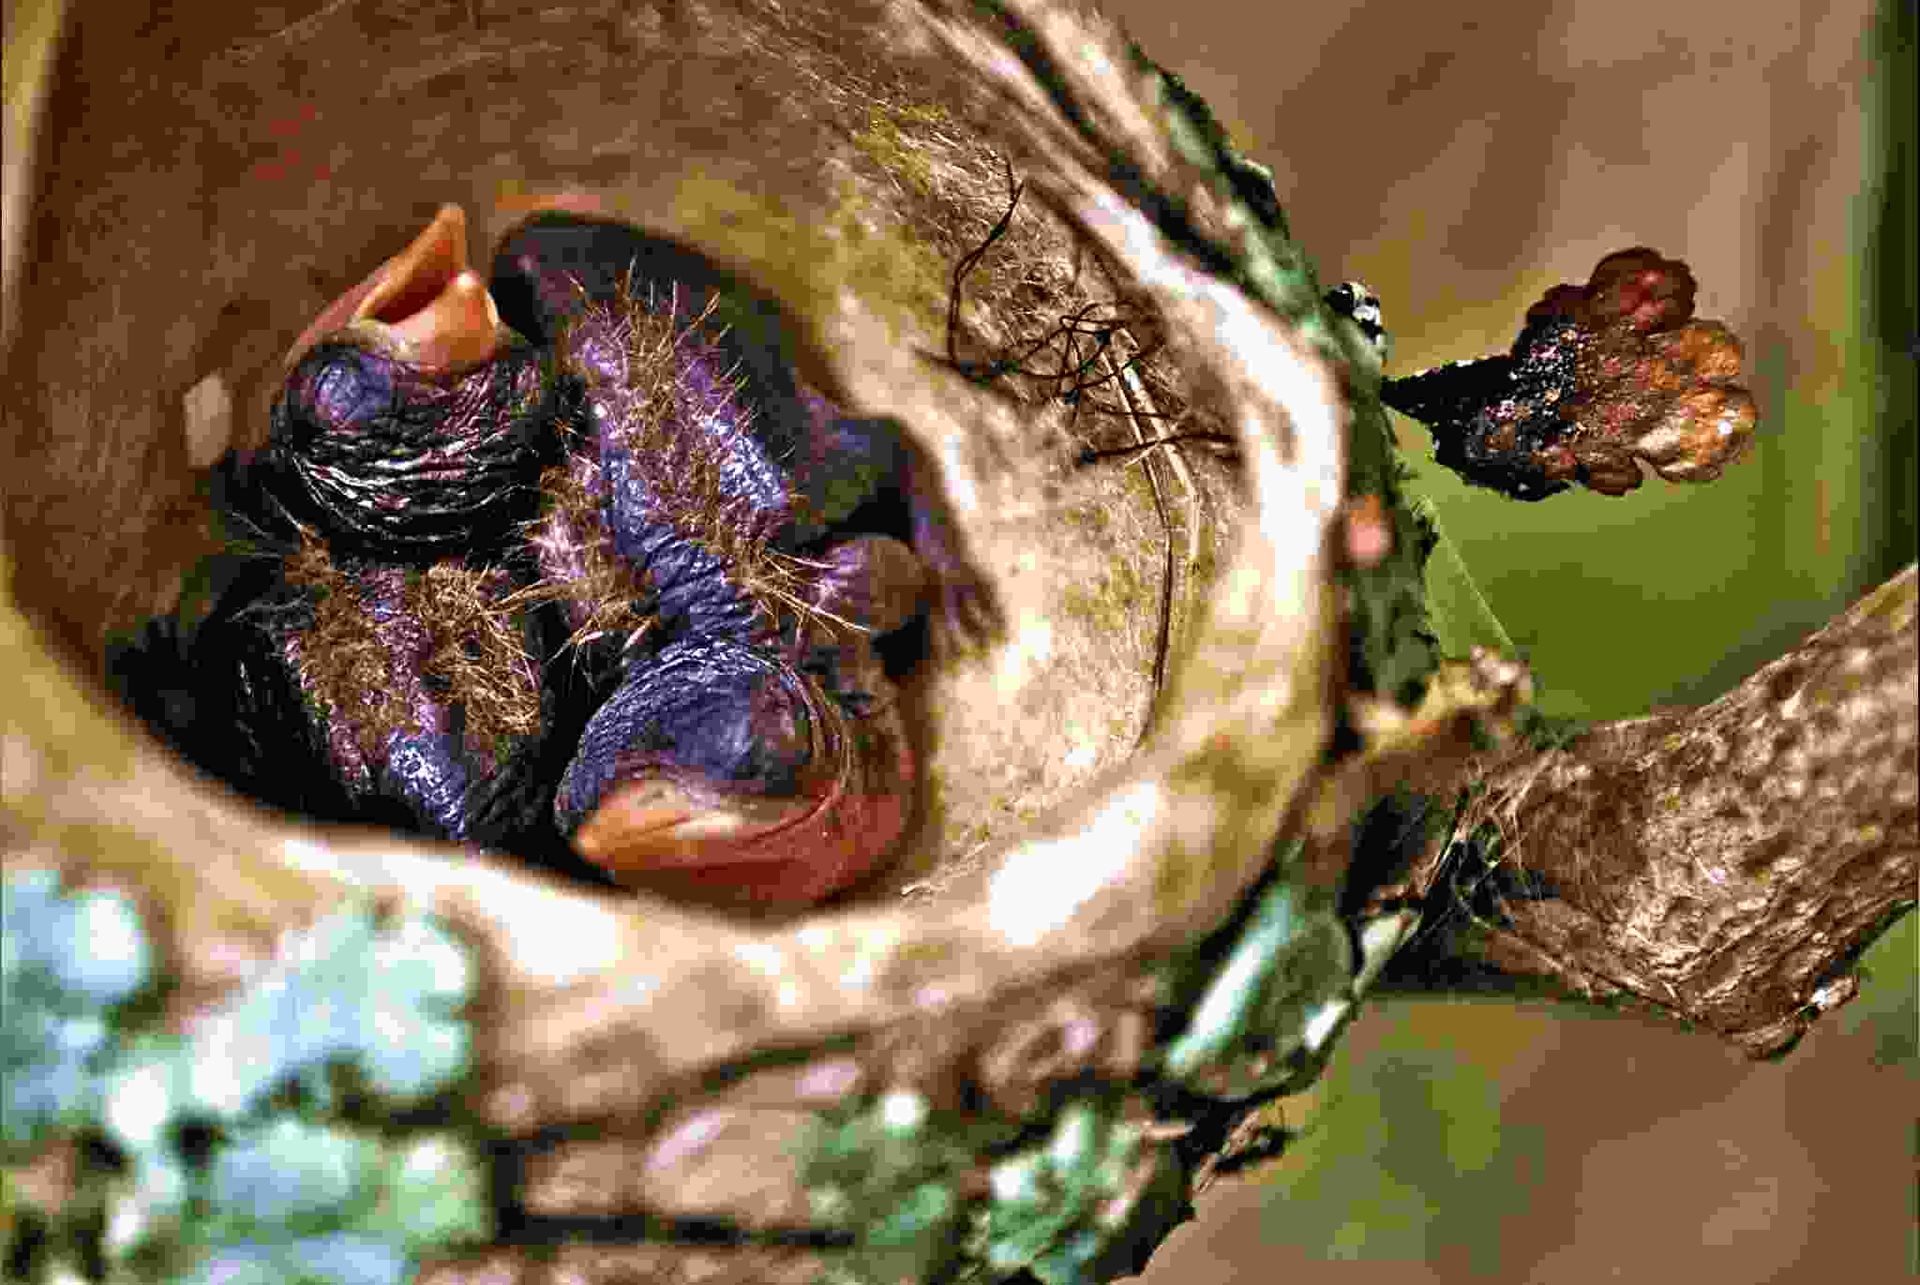 Crías de colibrí en el nido a la espera de alimento